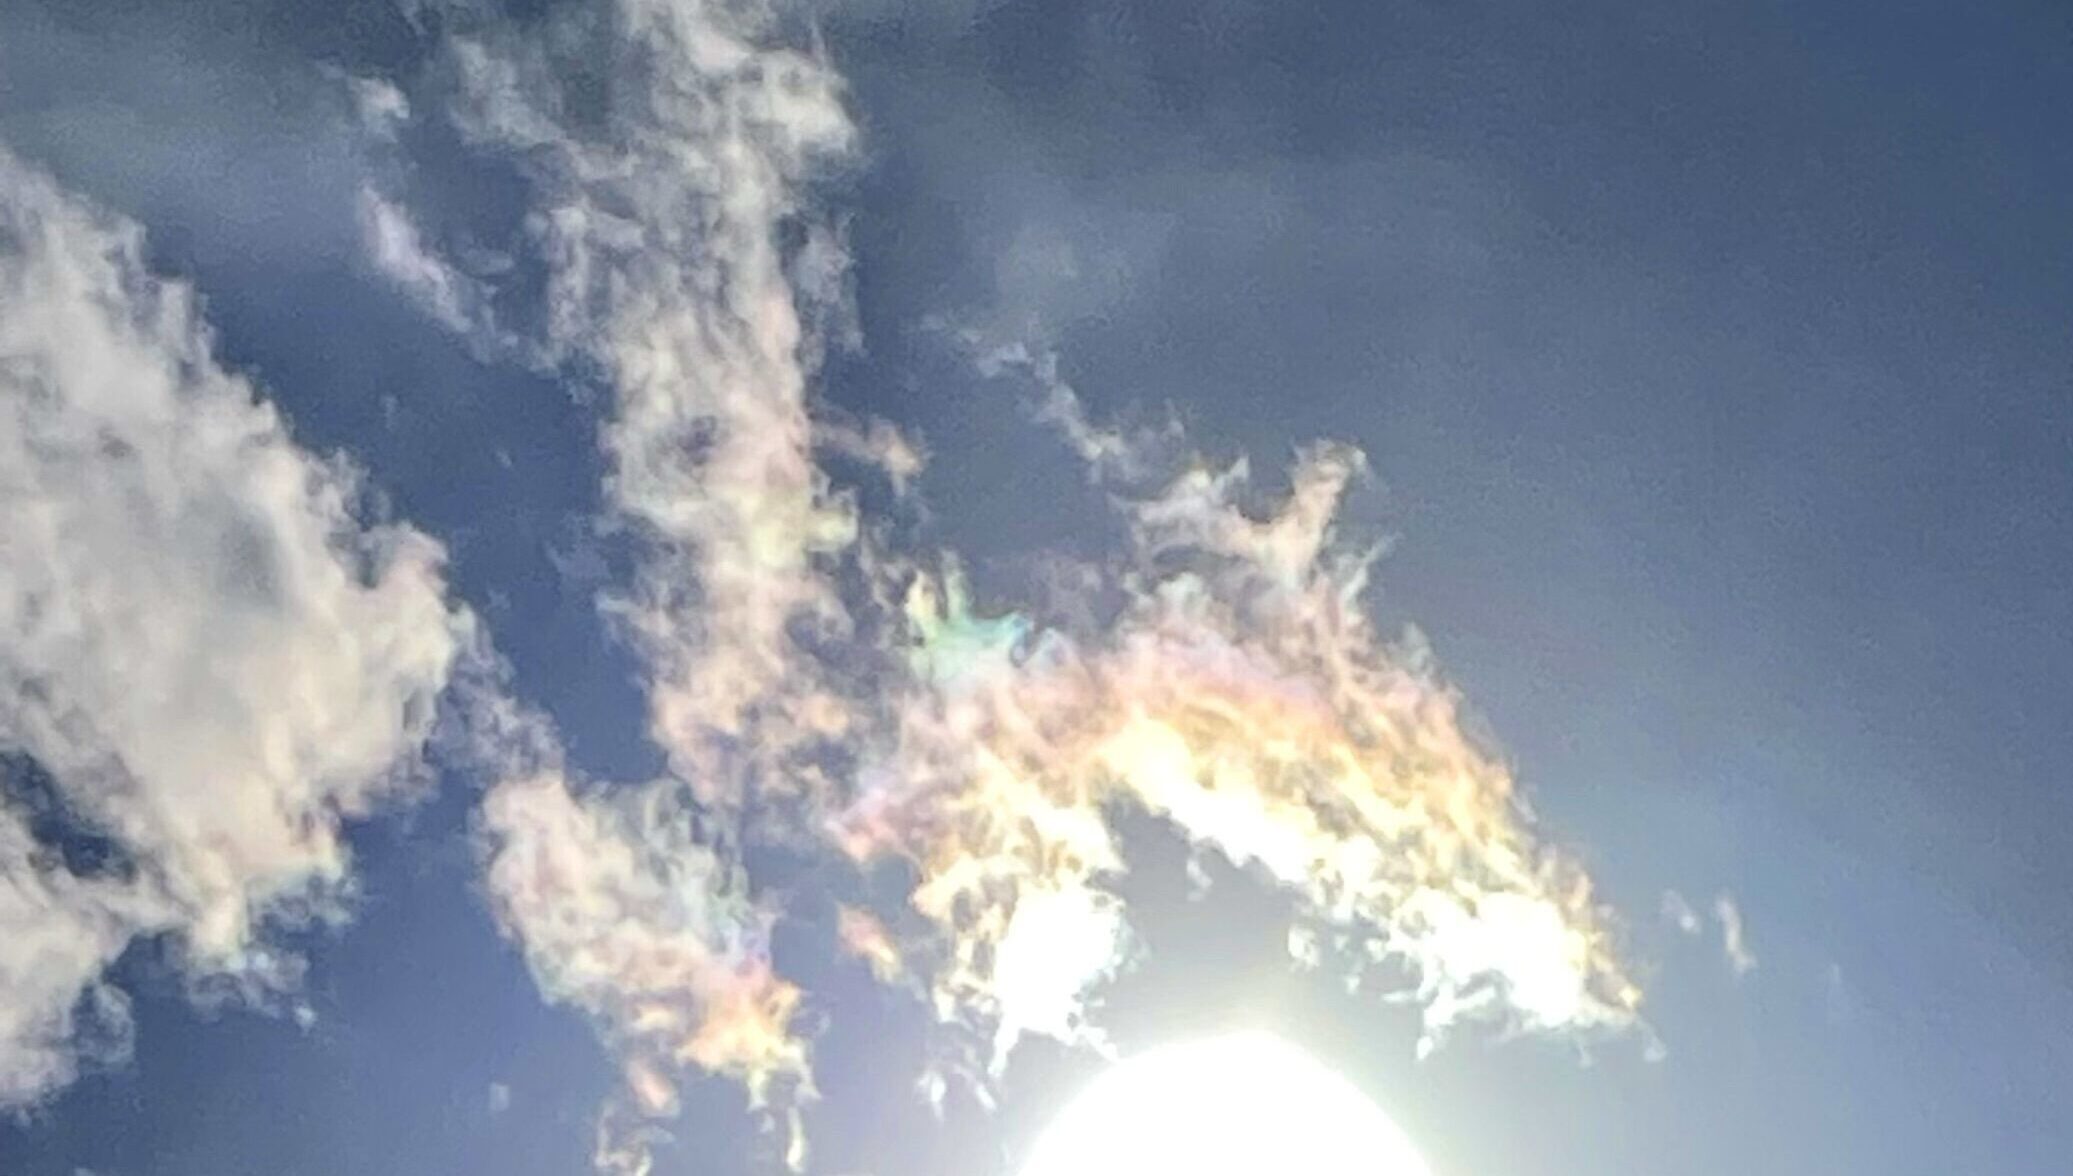 龍雲 龍神雲 を見たら意味するスピリチュアルなこと 空と君との間には